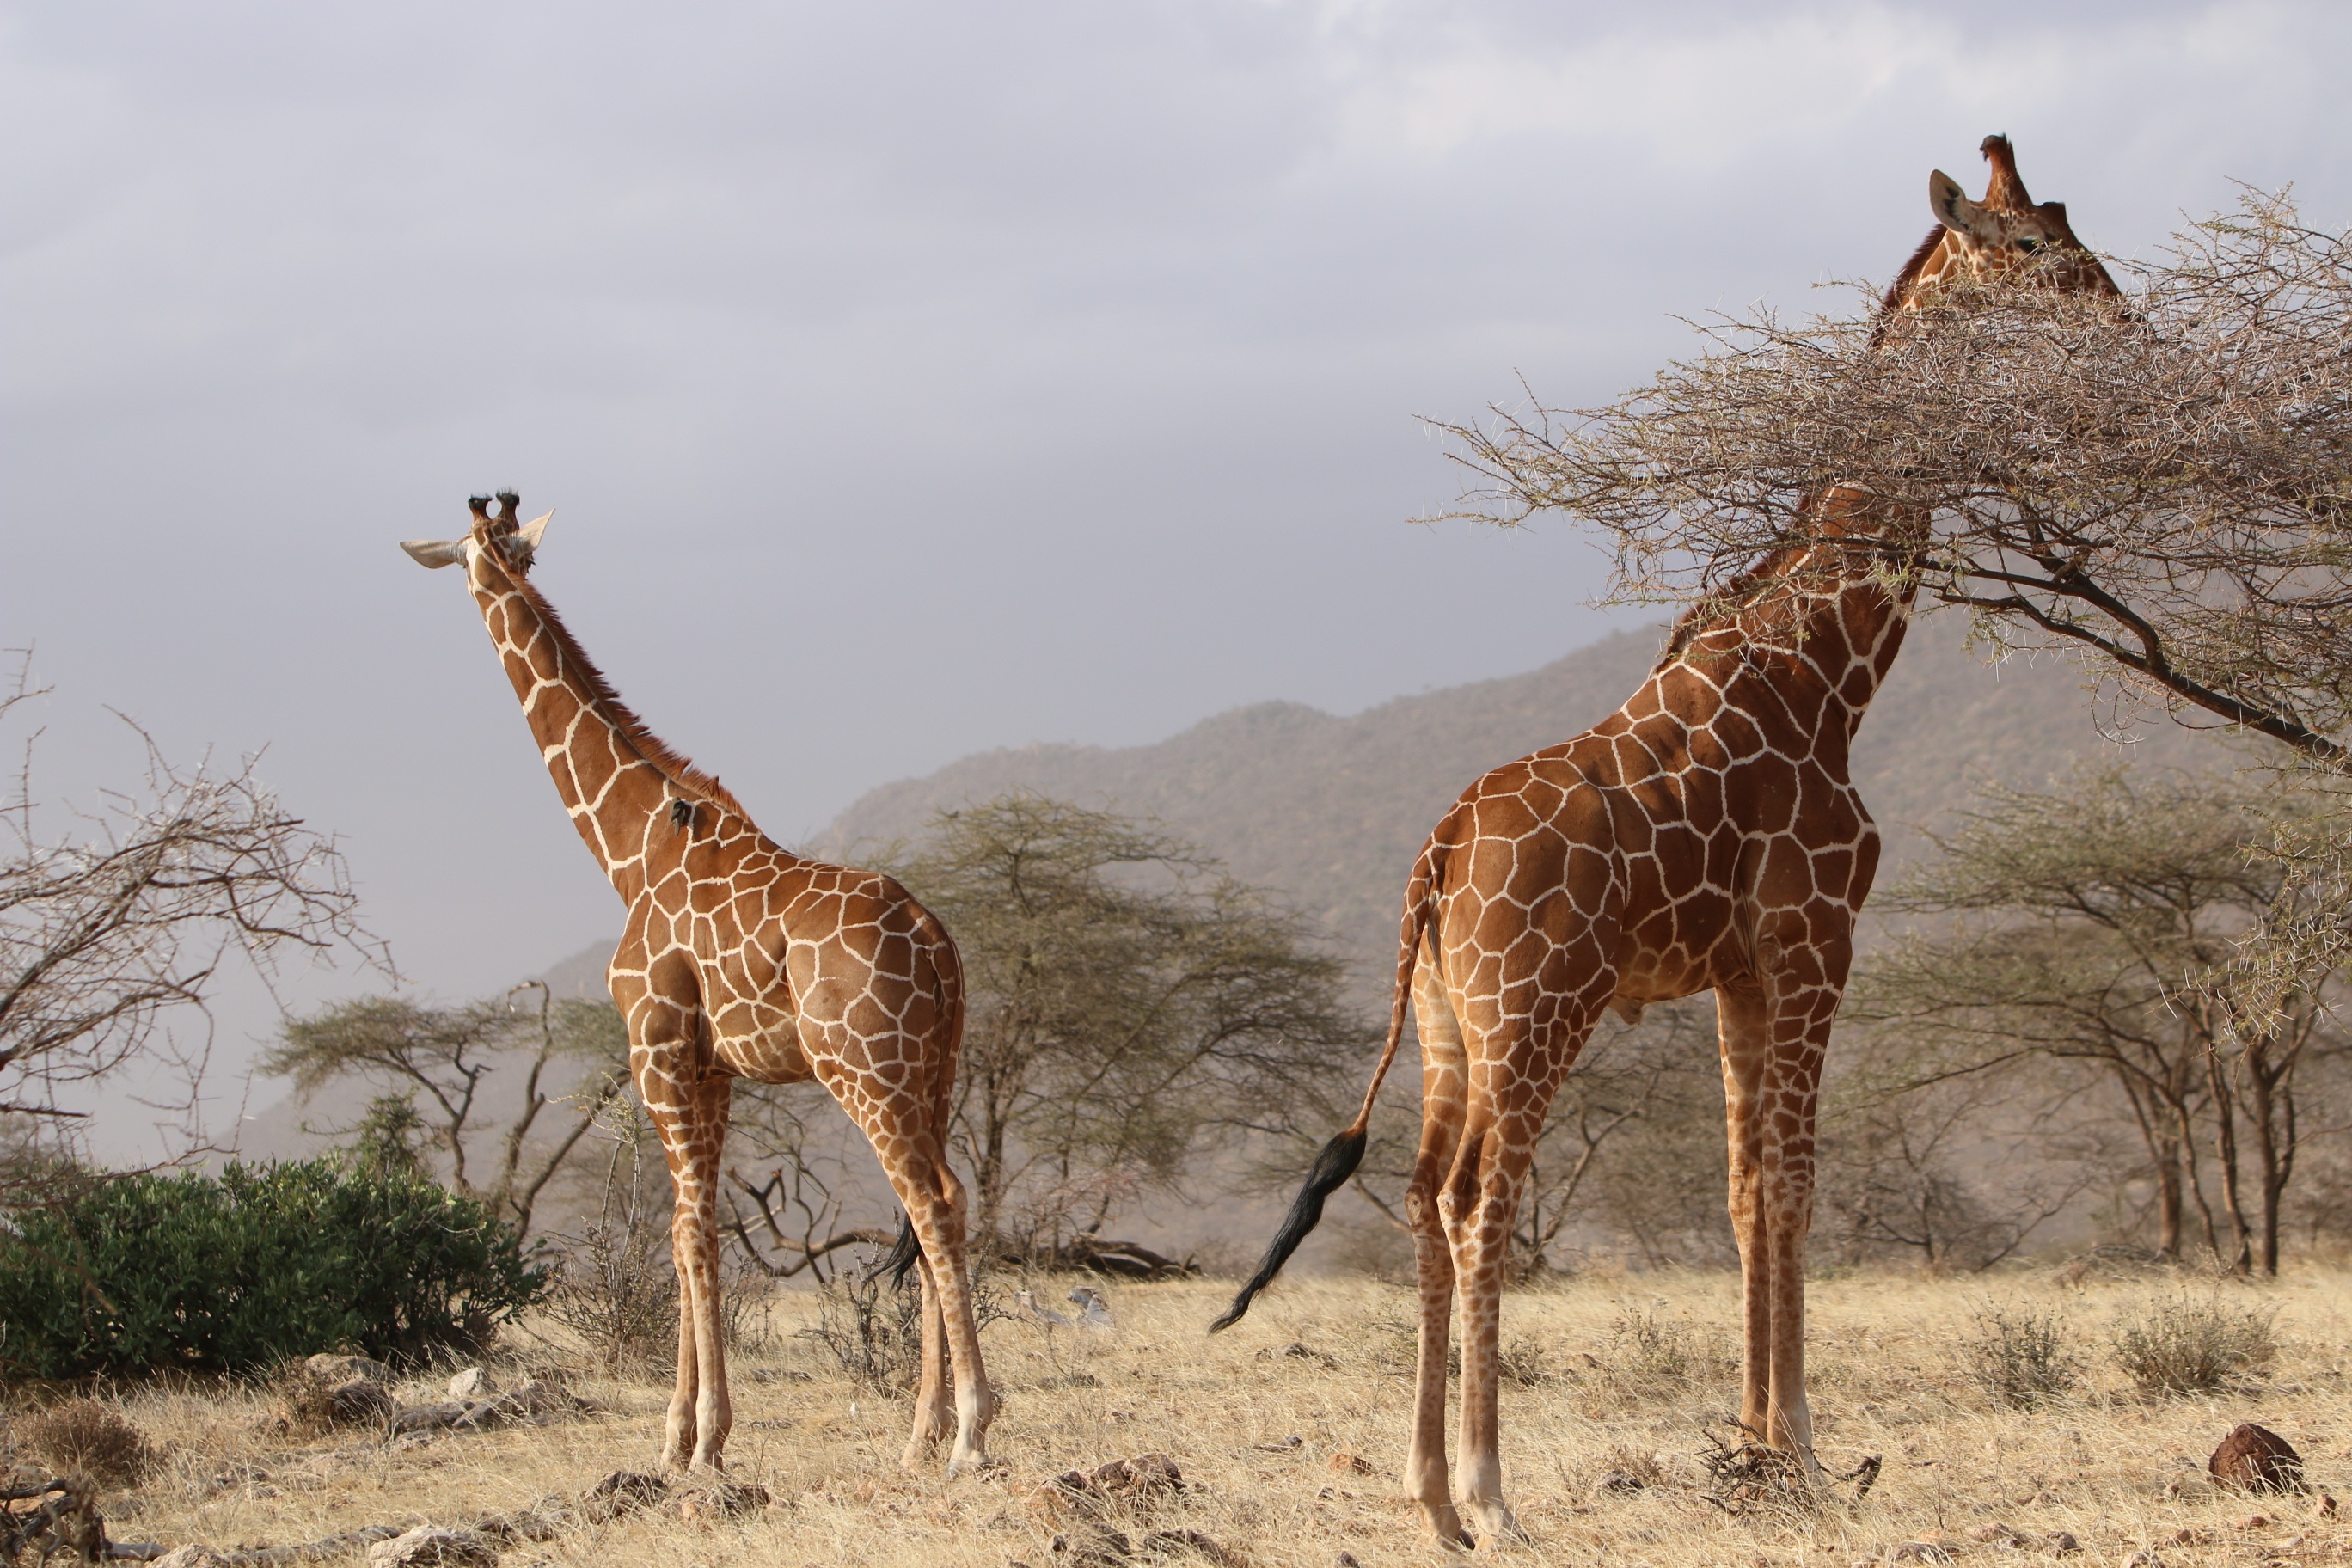 La savane et les girafes en Afrique. © Pxhere, domaine public